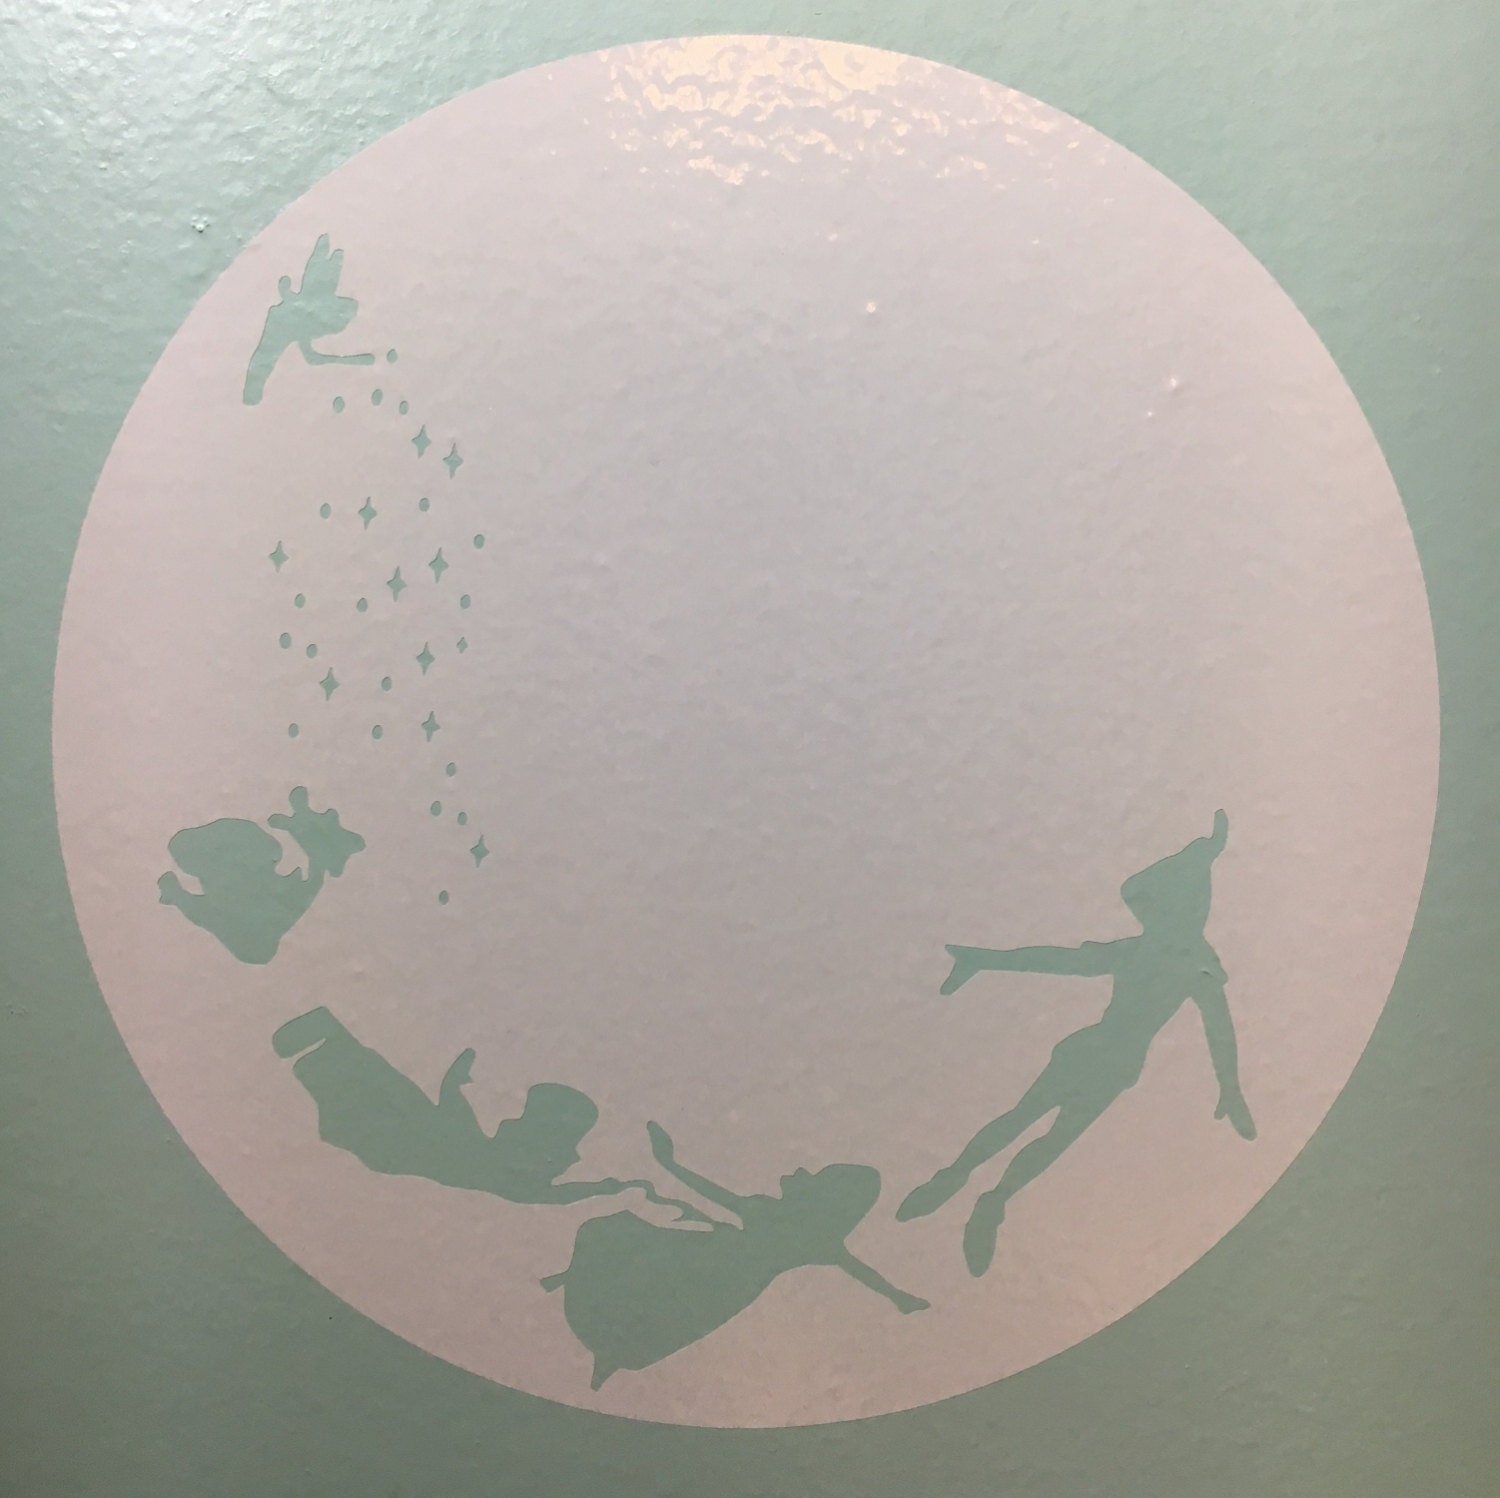 Peter Pan Moon wall decal sticker vinyl decal vinyl sticker